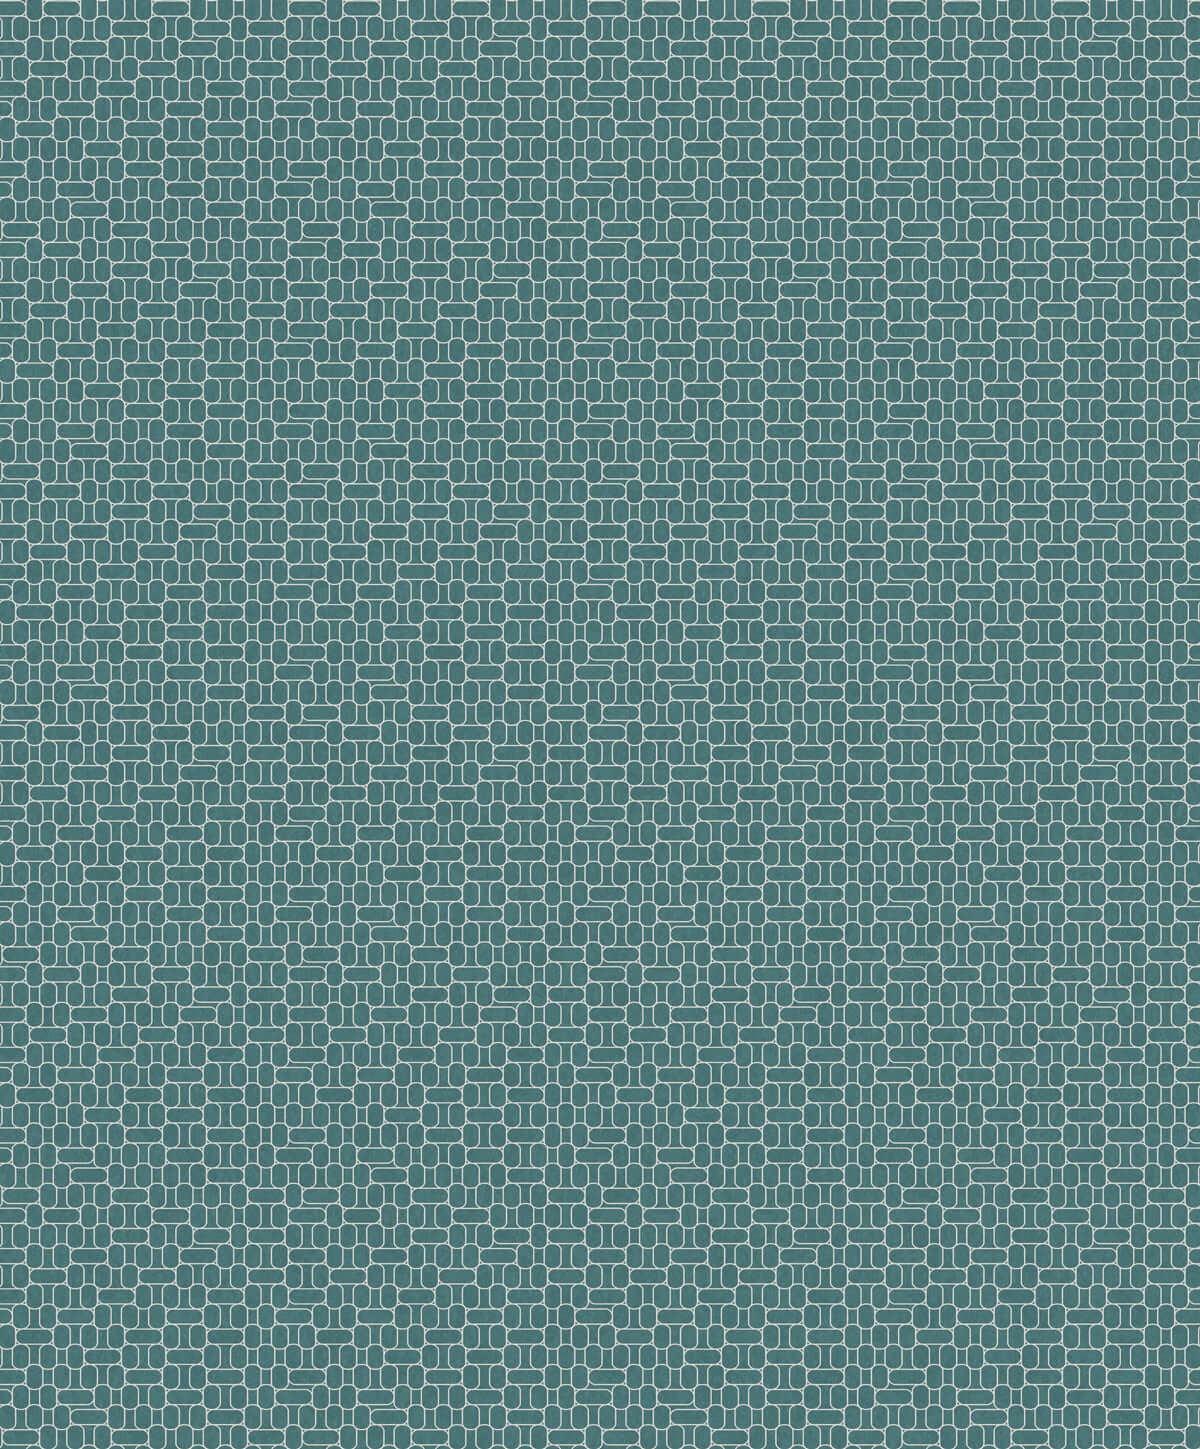 Mondrian Capsule Geometric Wallpaper - SAMPLE